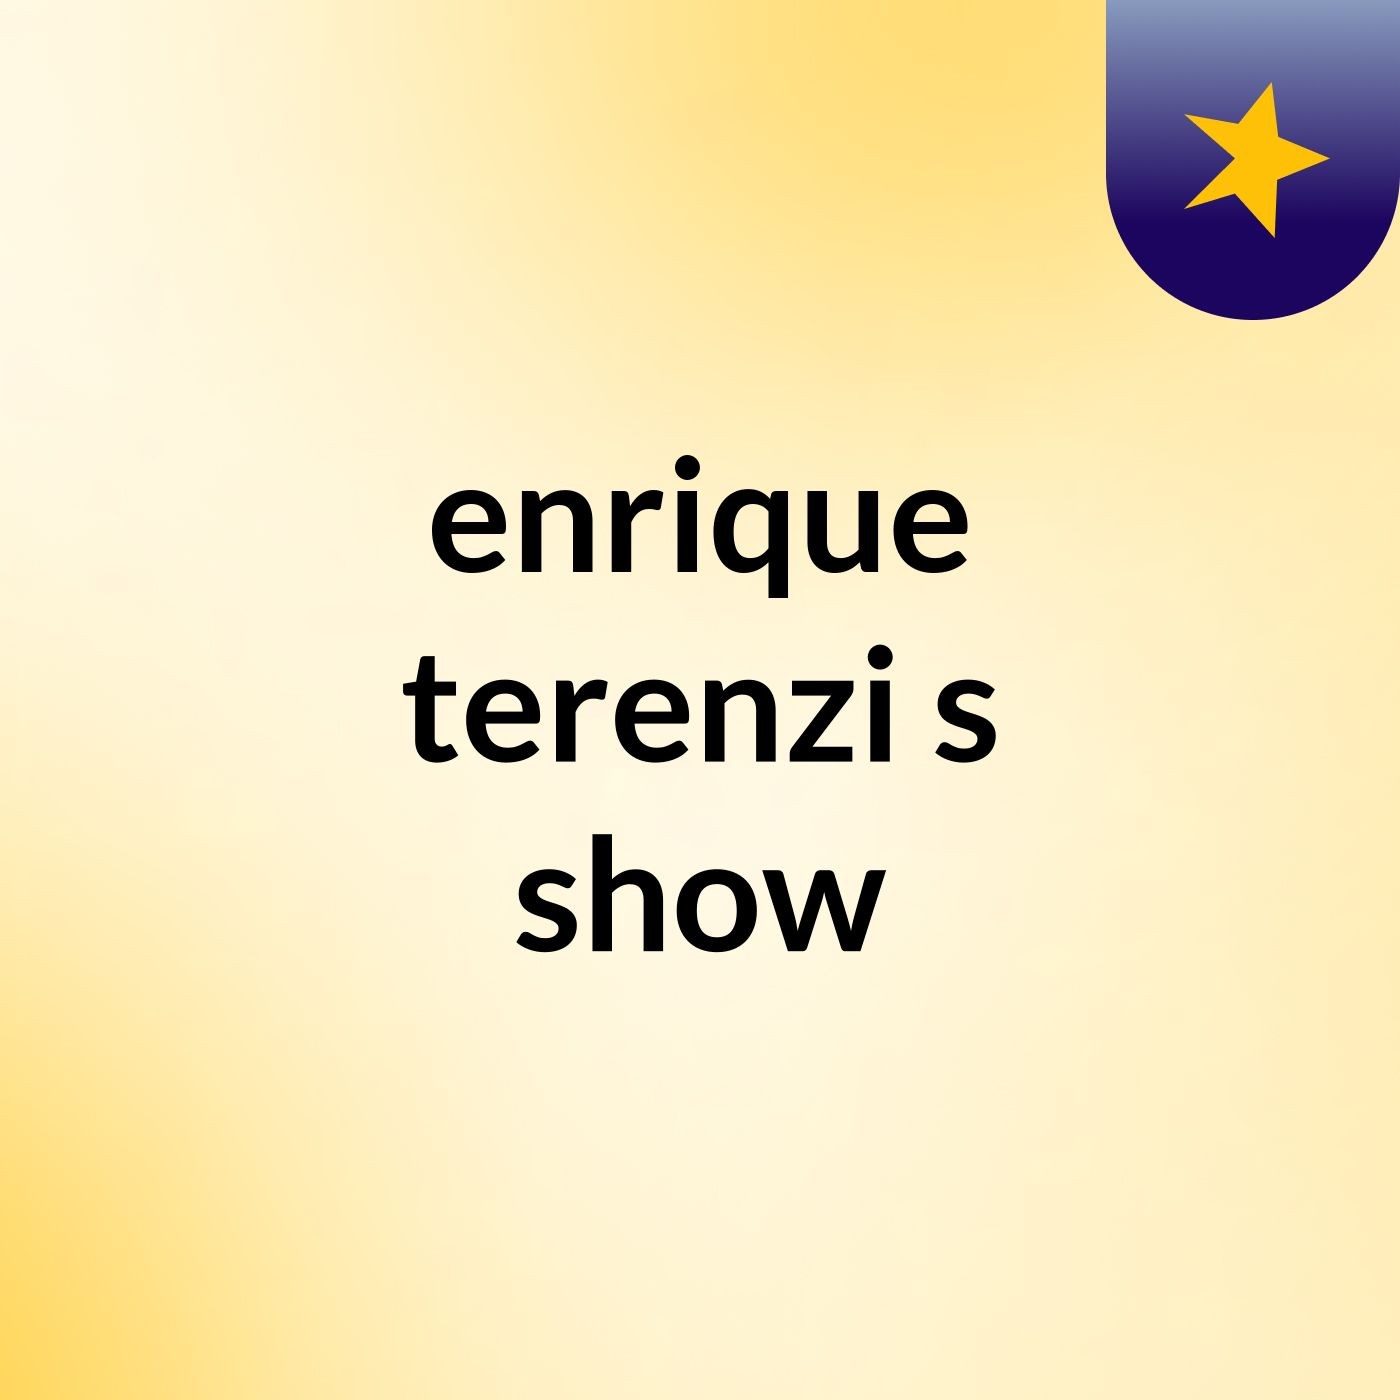 enrique terenzi's show